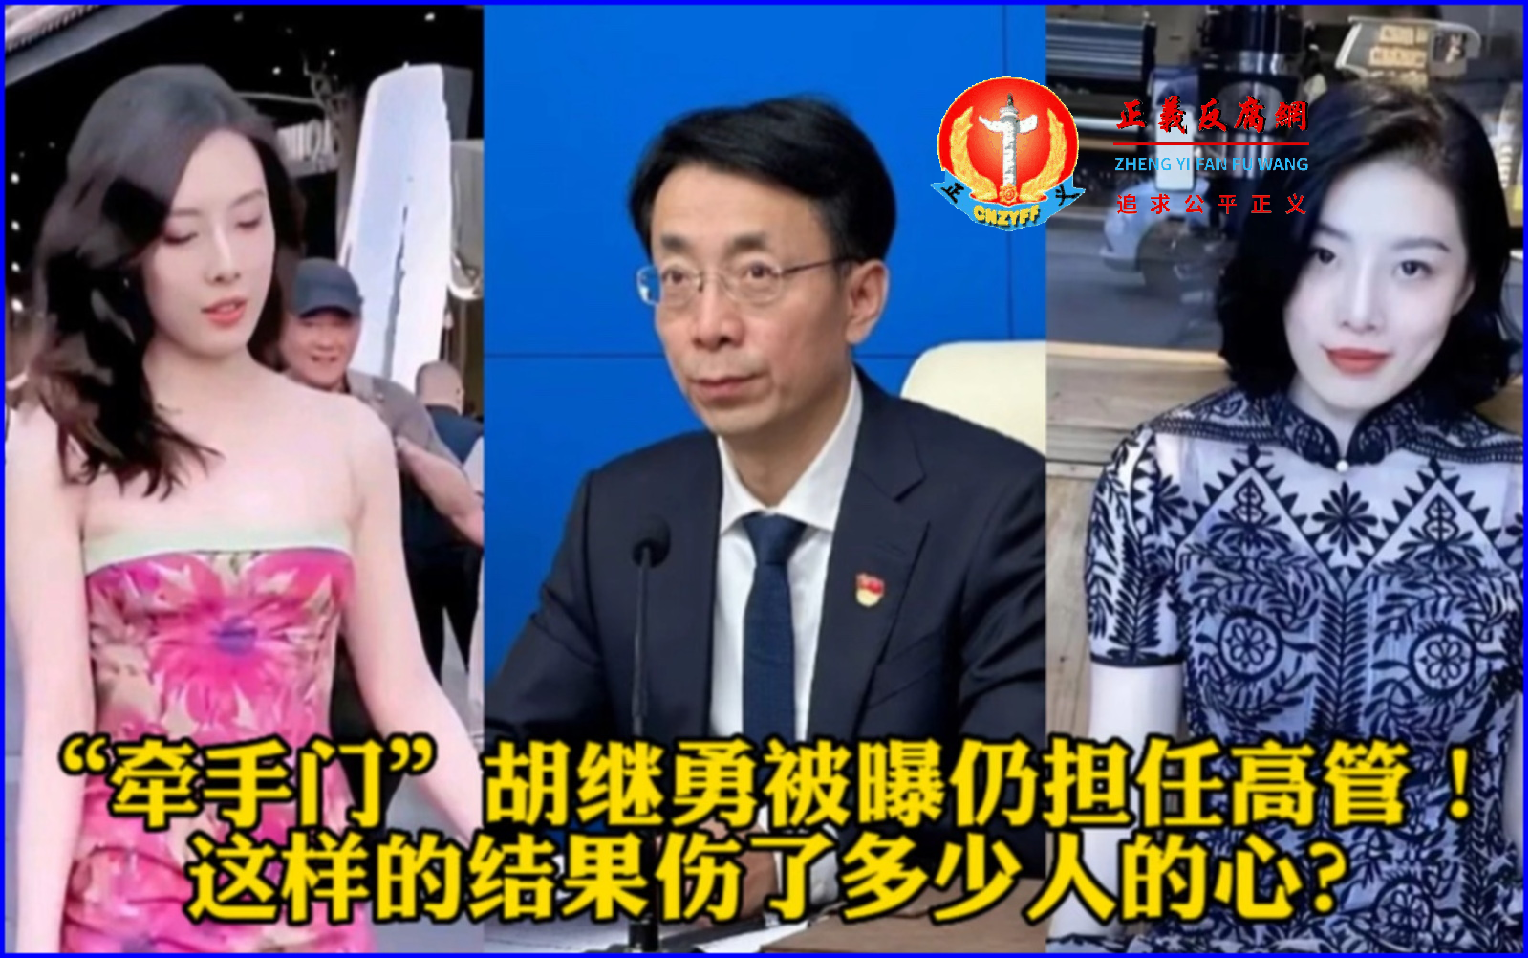 6月7日，中石油全资国企寰球工程项目管理（北京）有限公司党委书记胡继勇与异性牵手逛街被拍。.png